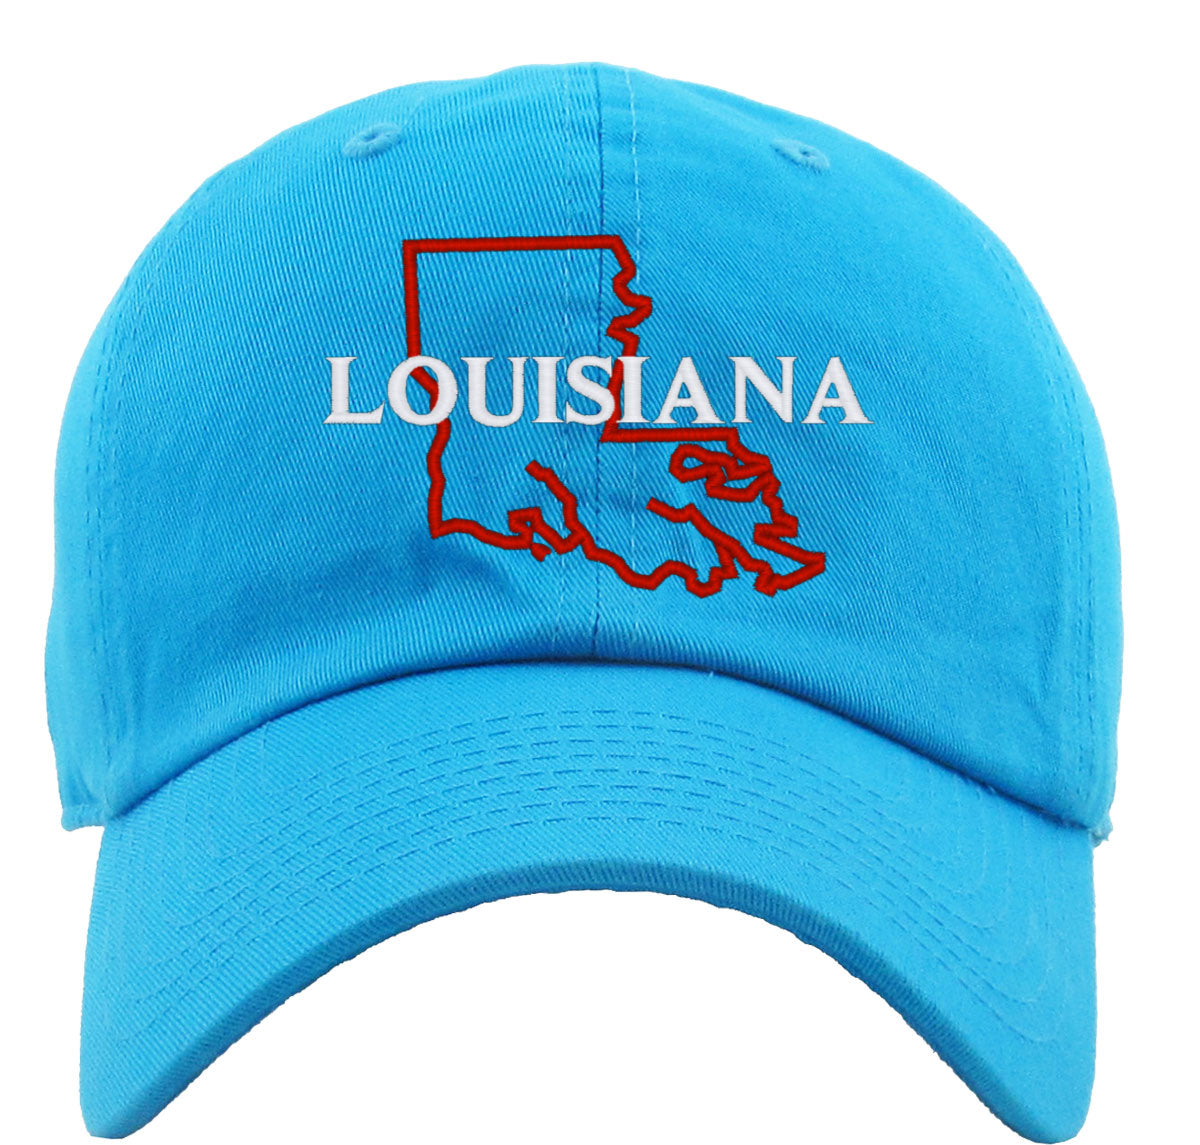 Louisiana Premium Baseball Cap